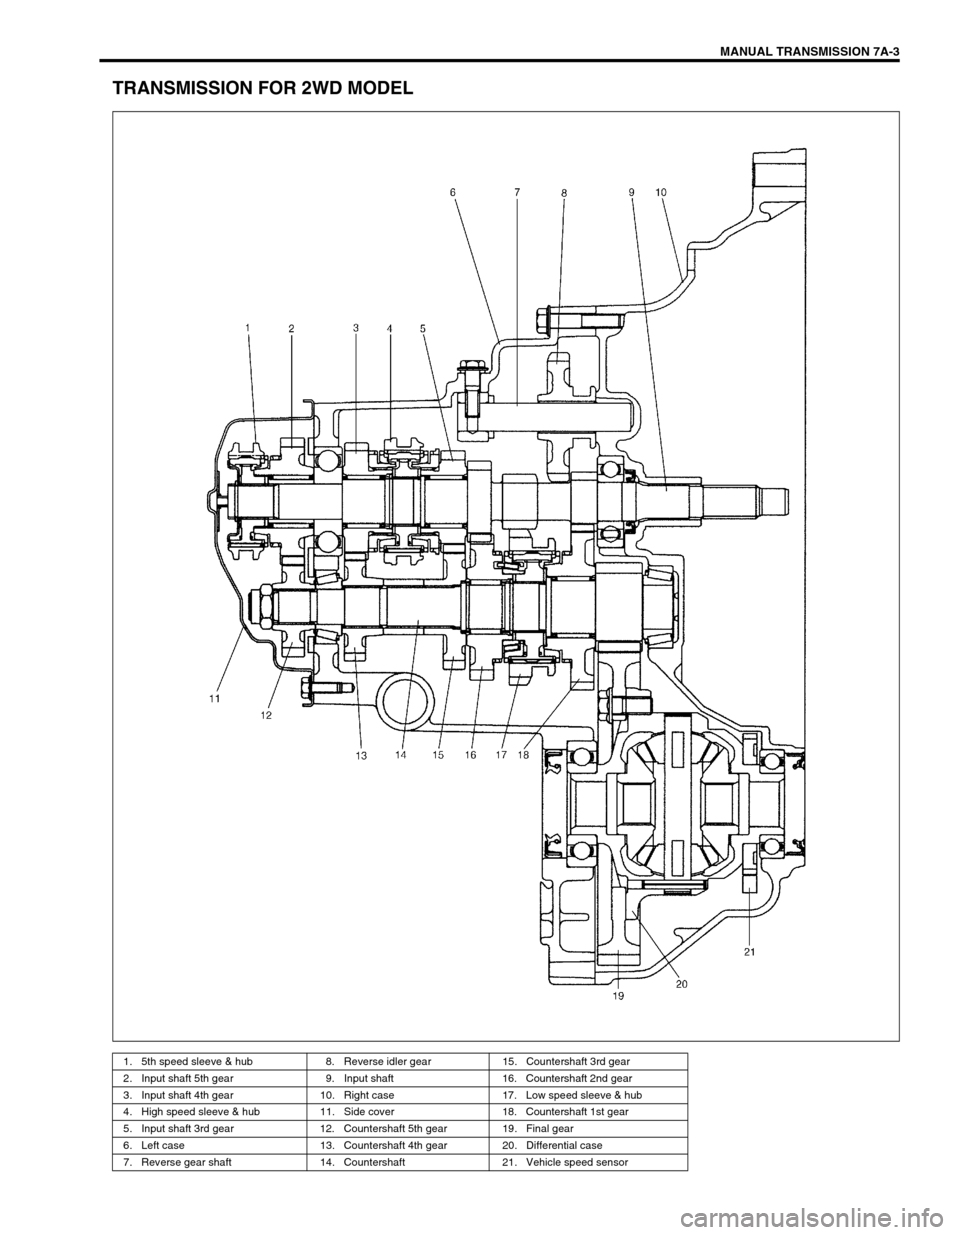 SUZUKI SWIFT 2000 1.G Transmission Service Workshop Manual MANUAL TRANSMISSION 7A-3
TRANSMISSION FOR 2WD MODEL
1. 5th speed sleeve & hub 8. Reverse idler gear 15. Countershaft 3rd gear
2. Input shaft 5th gear 9. Input shaft 16. Countershaft 2nd gear
3. Input 